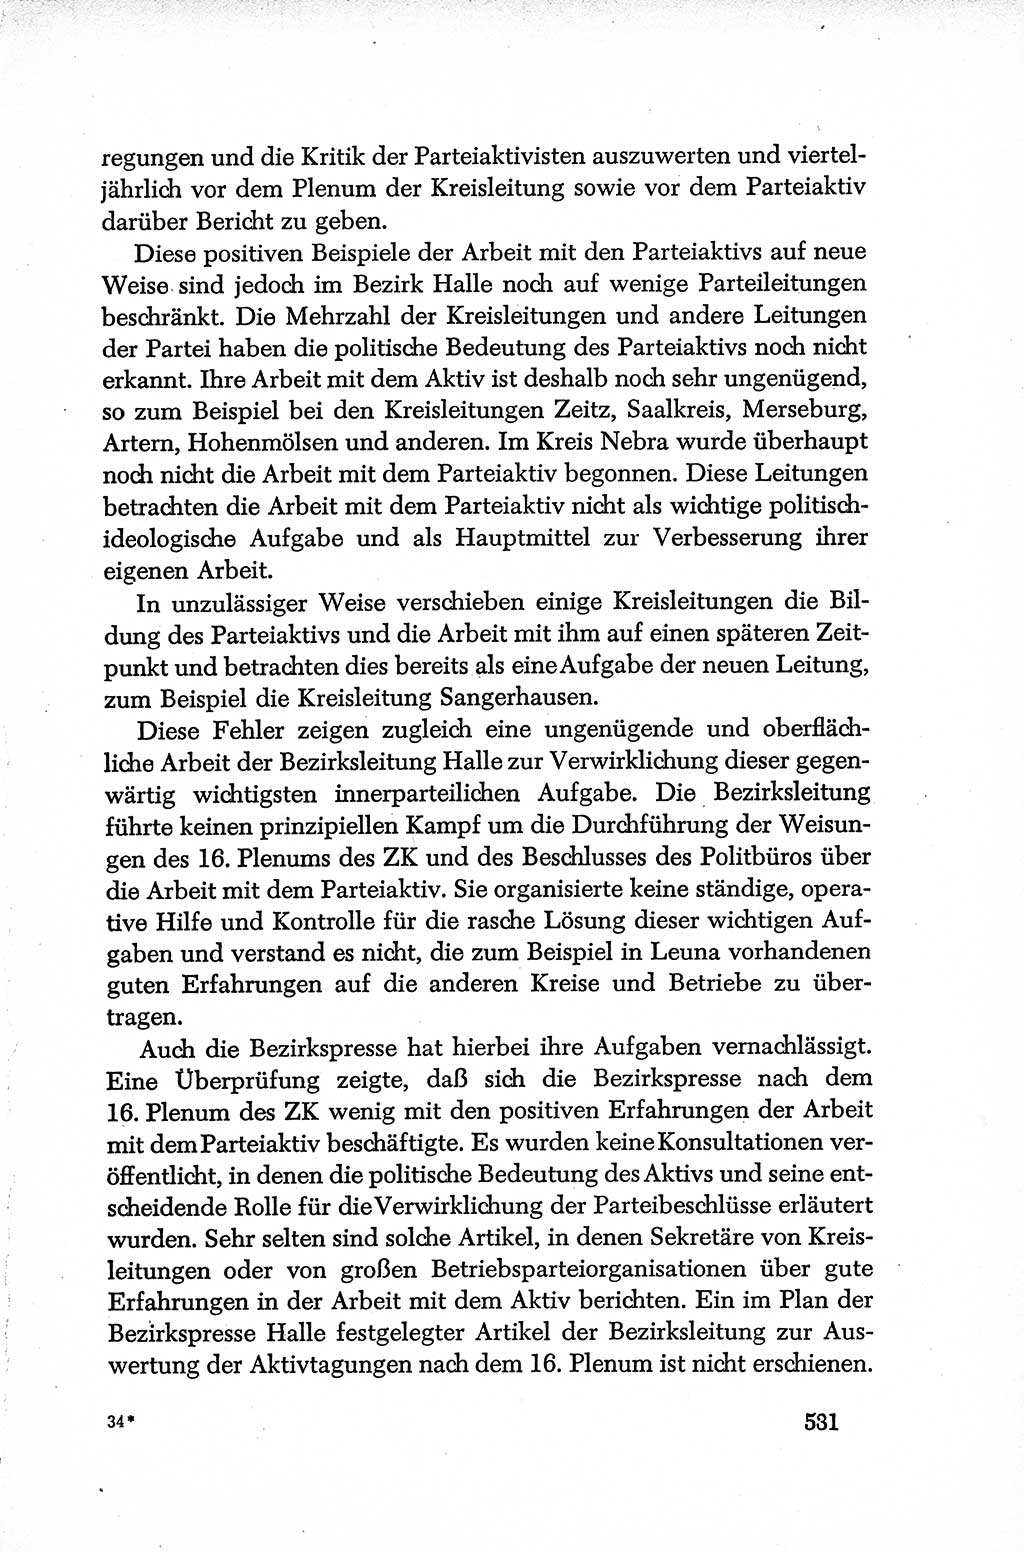 Dokumente der Sozialistischen Einheitspartei Deutschlands (SED) [Deutsche Demokratische Republik (DDR)] 1952-1953, Seite 531 (Dok. SED DDR 1952-1953, S. 531)